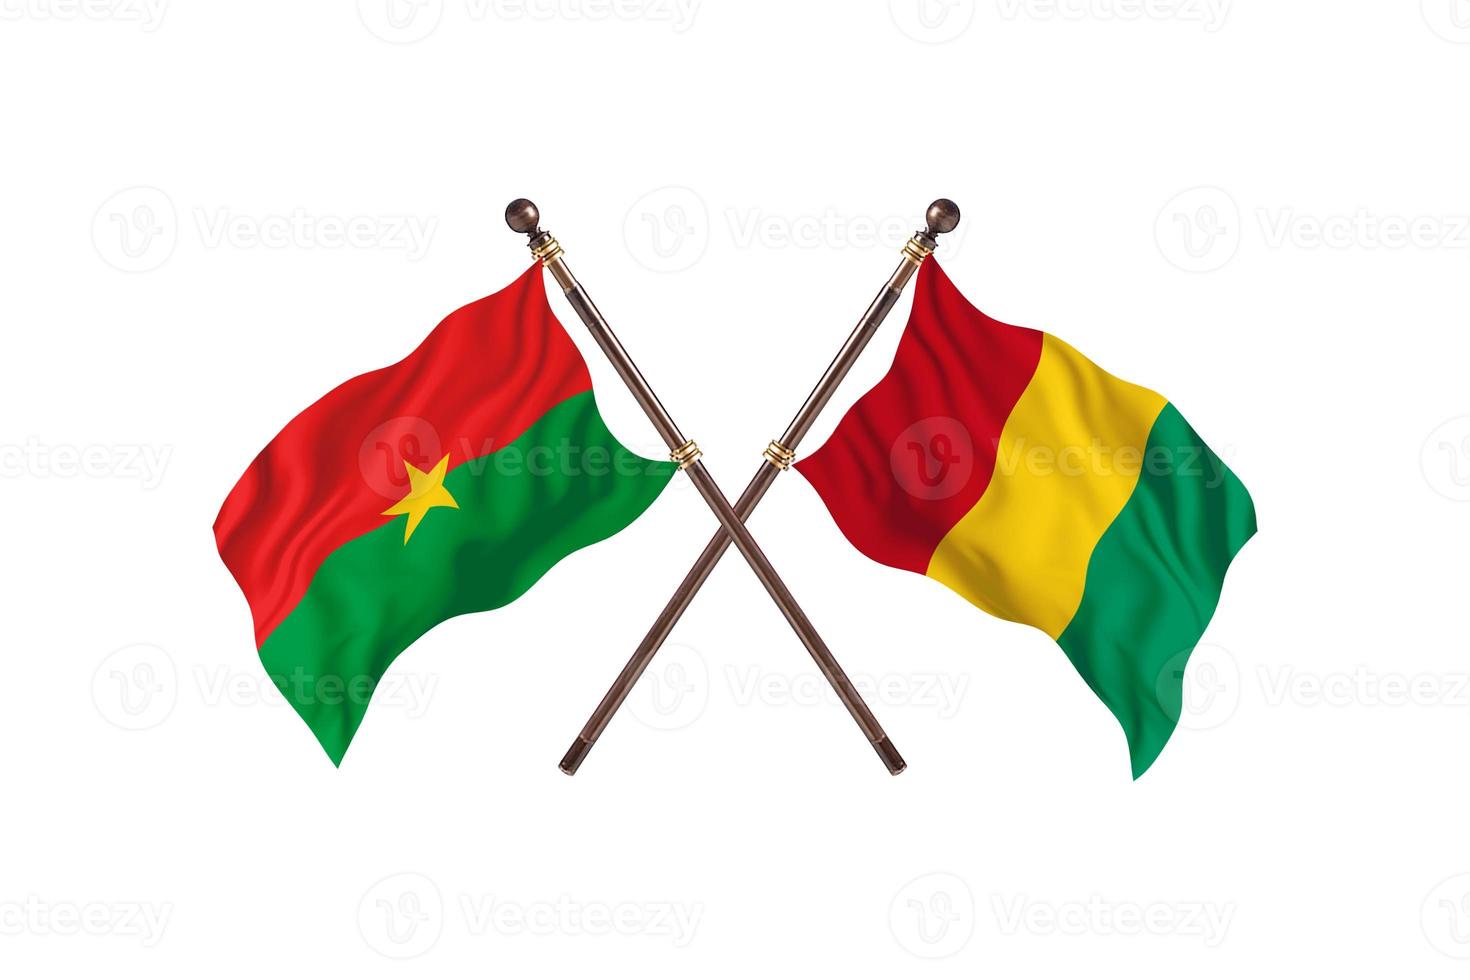 burkina faso contre guinée deux drapeaux de pays photo